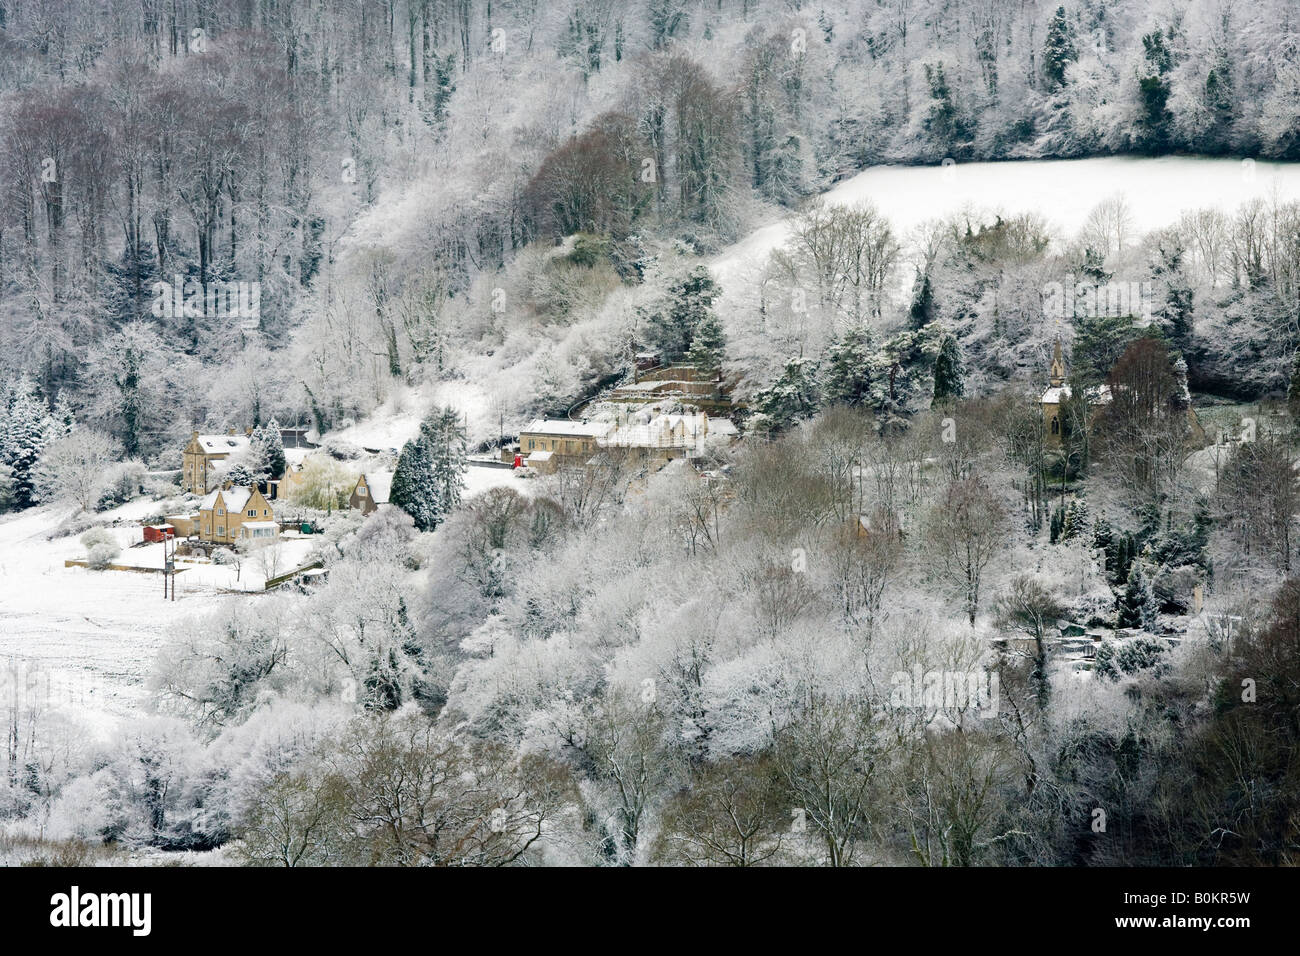 Neige de fin d'hiver sur le village de Cotswold de SLAD, Gloucestershire Royaume-Uni - la maison d'enfance de Laurie Lee Banque D'Images